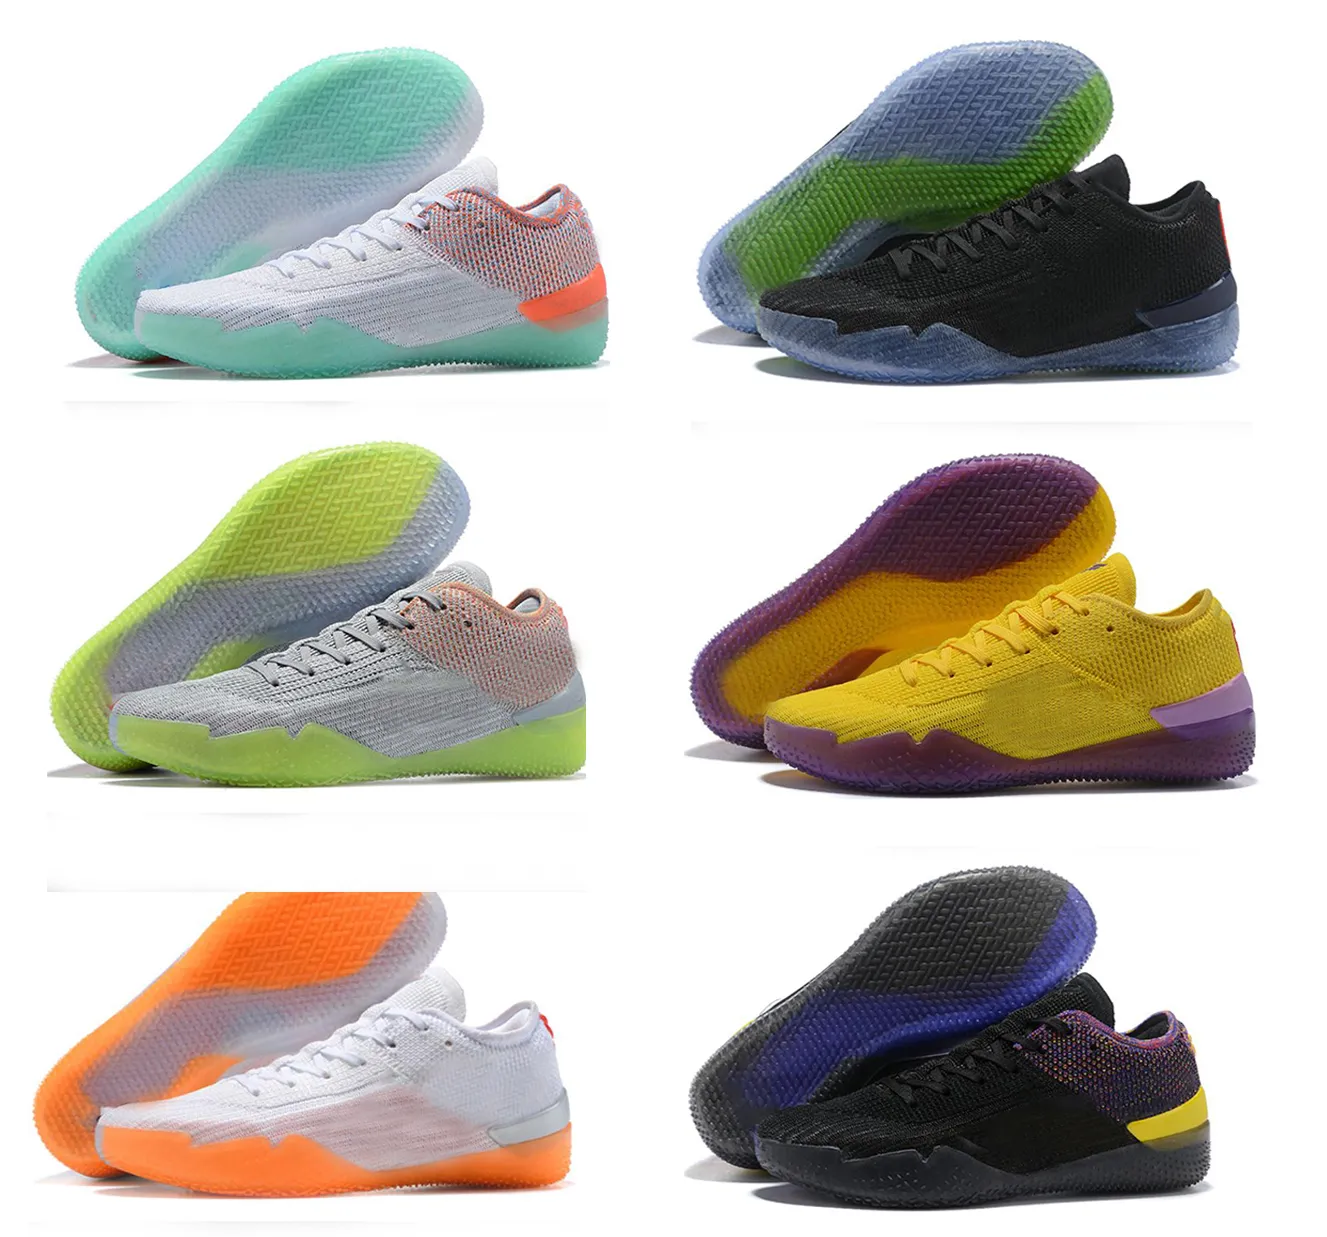 Ad Nxt 360 Sneakers Zapatillas de baloncesto Sports Men Sneakers para la venta A.D. Zapatillas de baloncesto ligeras Agility Mamba Mentality yakuda Entrenamiento local dhgate Descuento